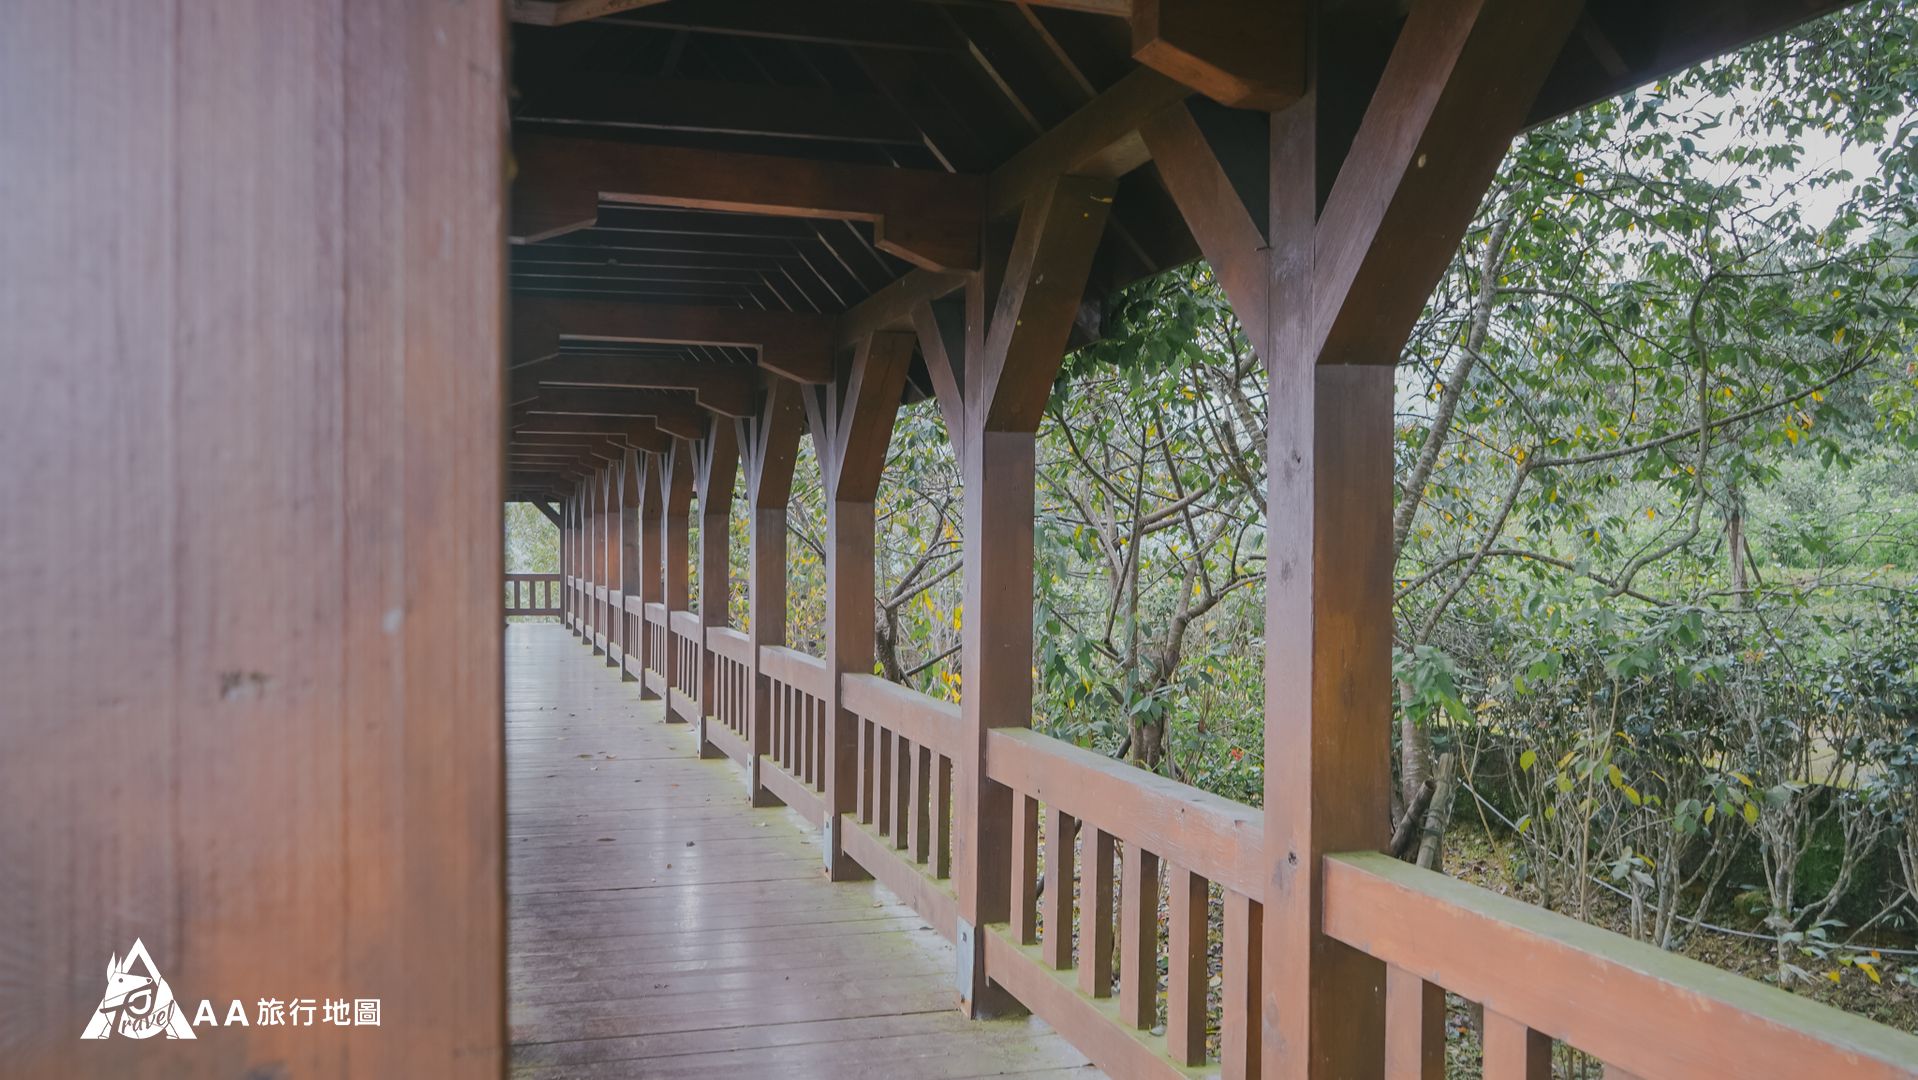 鳳凰亭序 這個是最上面的觀景迴廊，長長的木走道很適合拍照